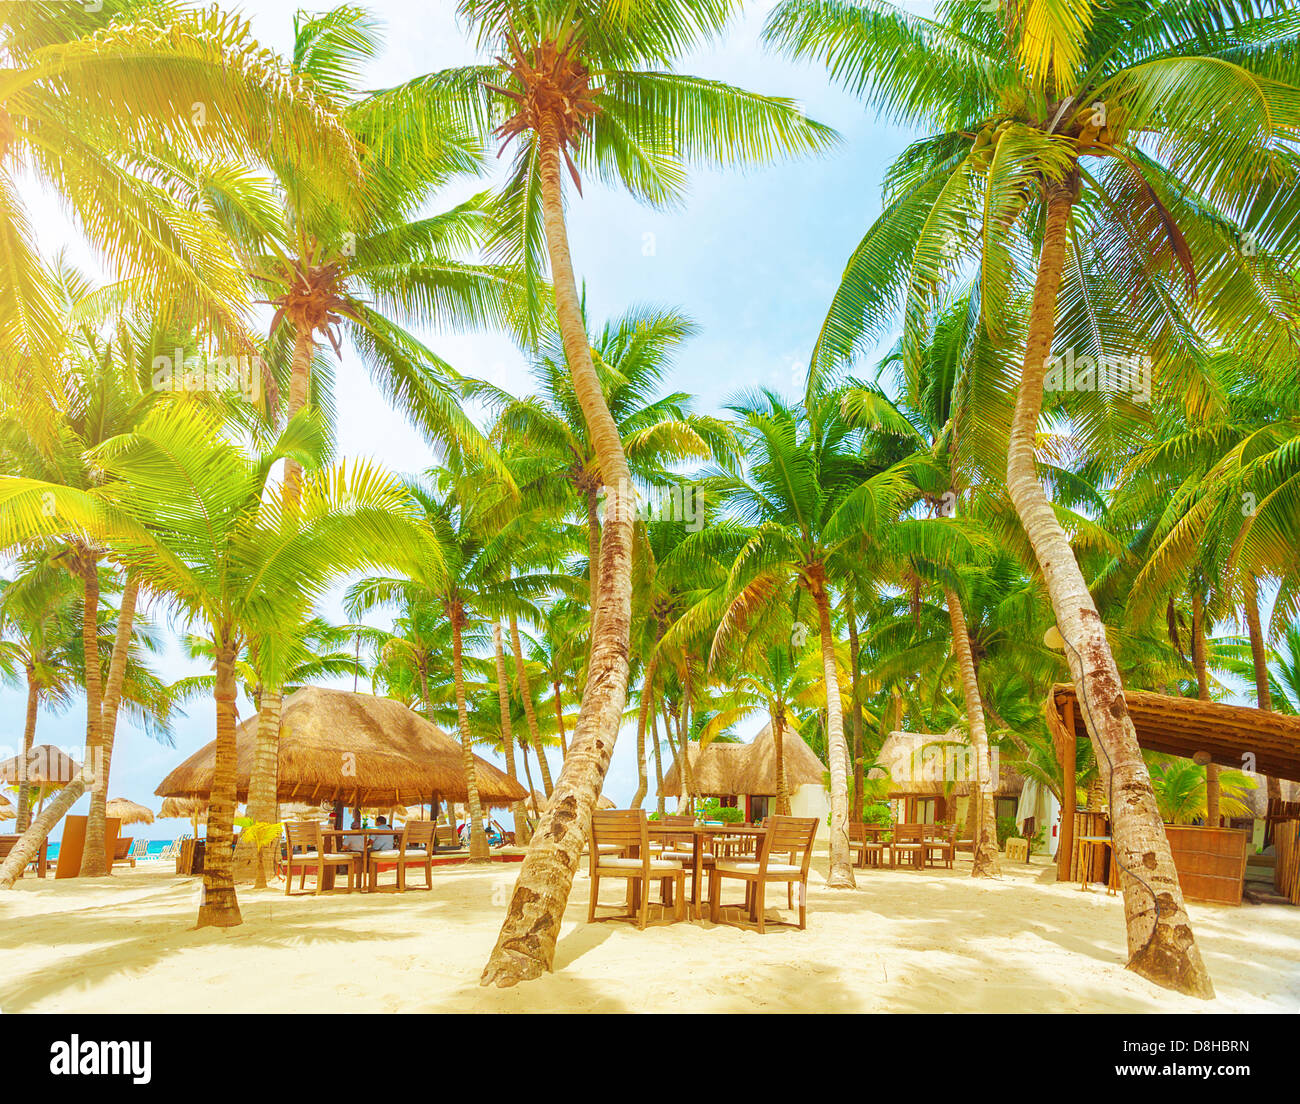 Luxury beach resort, romantica isola nell'Oceano Atlantico, confortevoli bungalow, palme, accogliente caffetteria sulla spiaggia sabbiosa Foto Stock